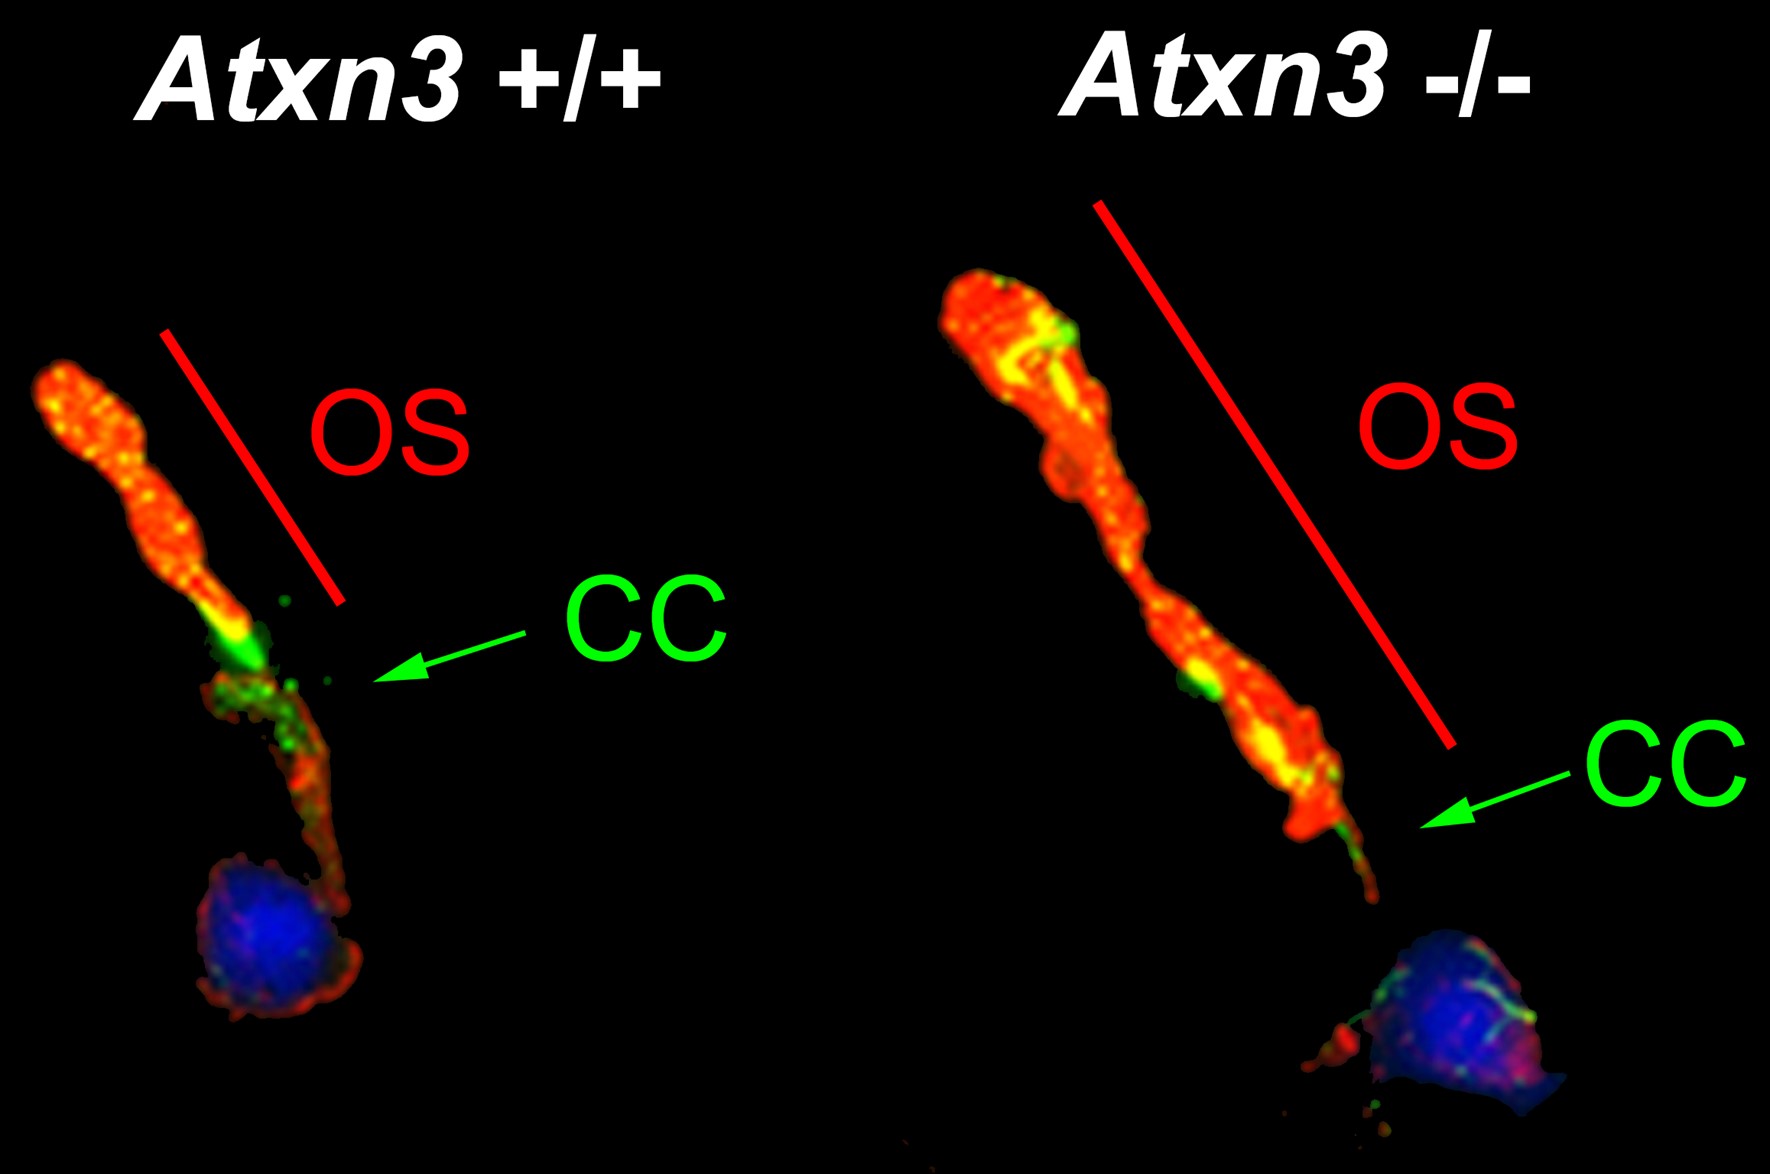 Imatge de bastons (un tipus de fotoreceptor) aïllats de la retina d’un ratolí control (Atxn3 +/+) i un ratolí amb el gen Atxn3 silenciat (Atxn3-/-). Es pot observar l’elongació del segment extern o cili neurosensorial (OS més CC) quan no es produeix proteïna ATXN3.